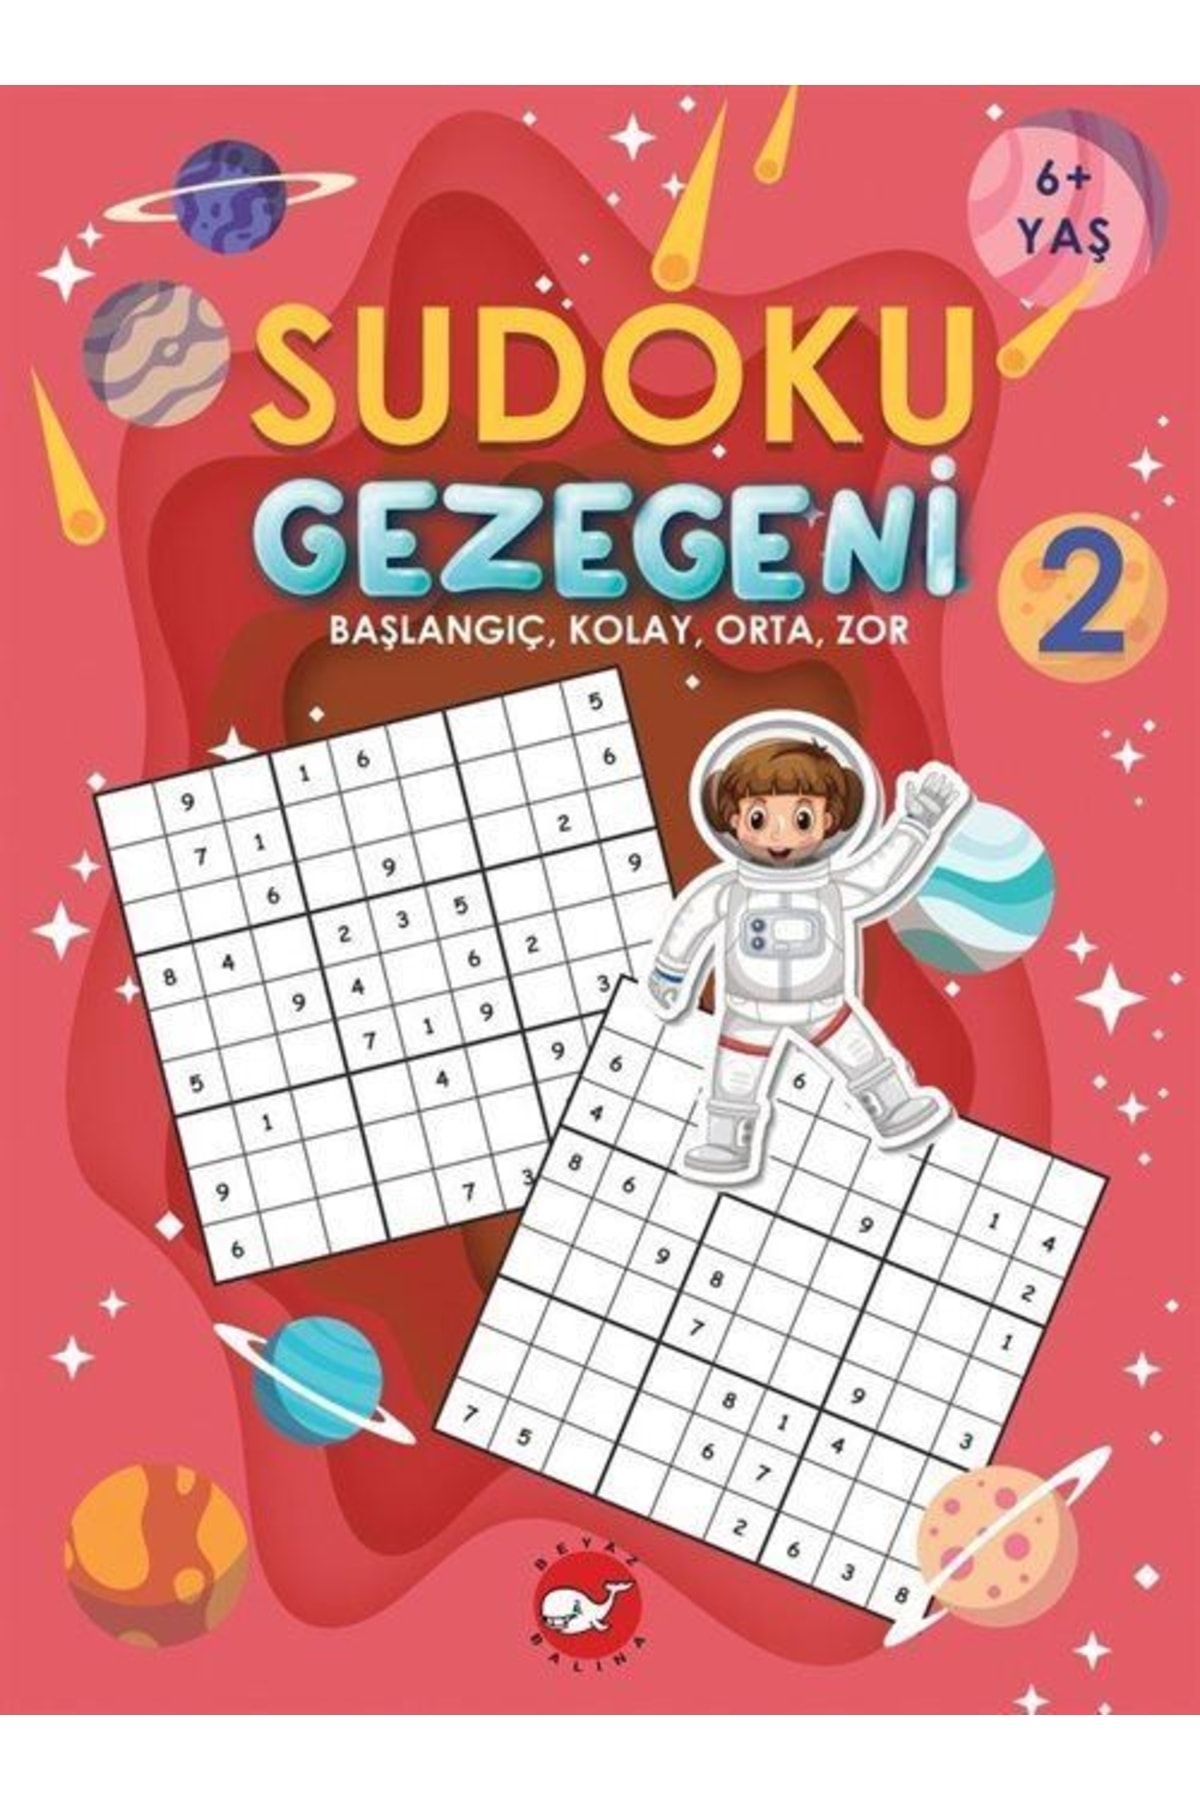 Beyaz Balina Yayınları Sudoku Gezegeni 2 / Başlangıç, Kolay, Orta, Zor